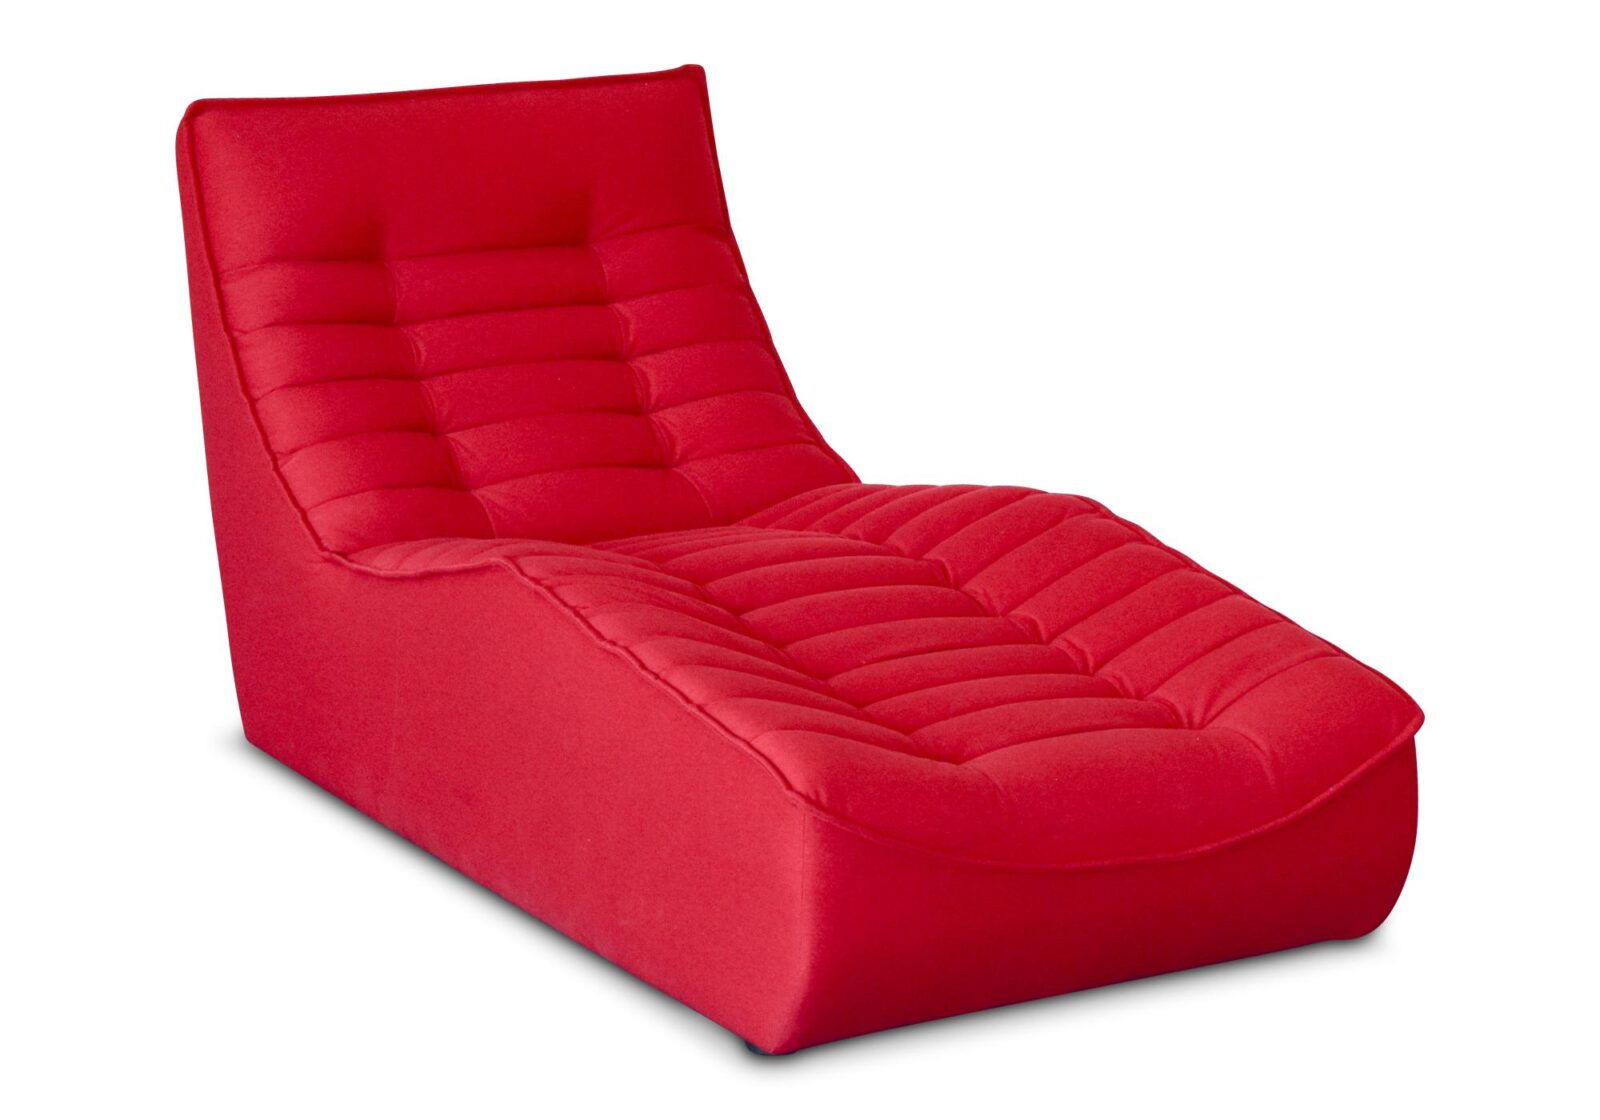 Relaxliege Colors in Leder oder Stoff. Bezug: Stoff. Farbe: Rot. Erhältlich bei Möbel Gallati.